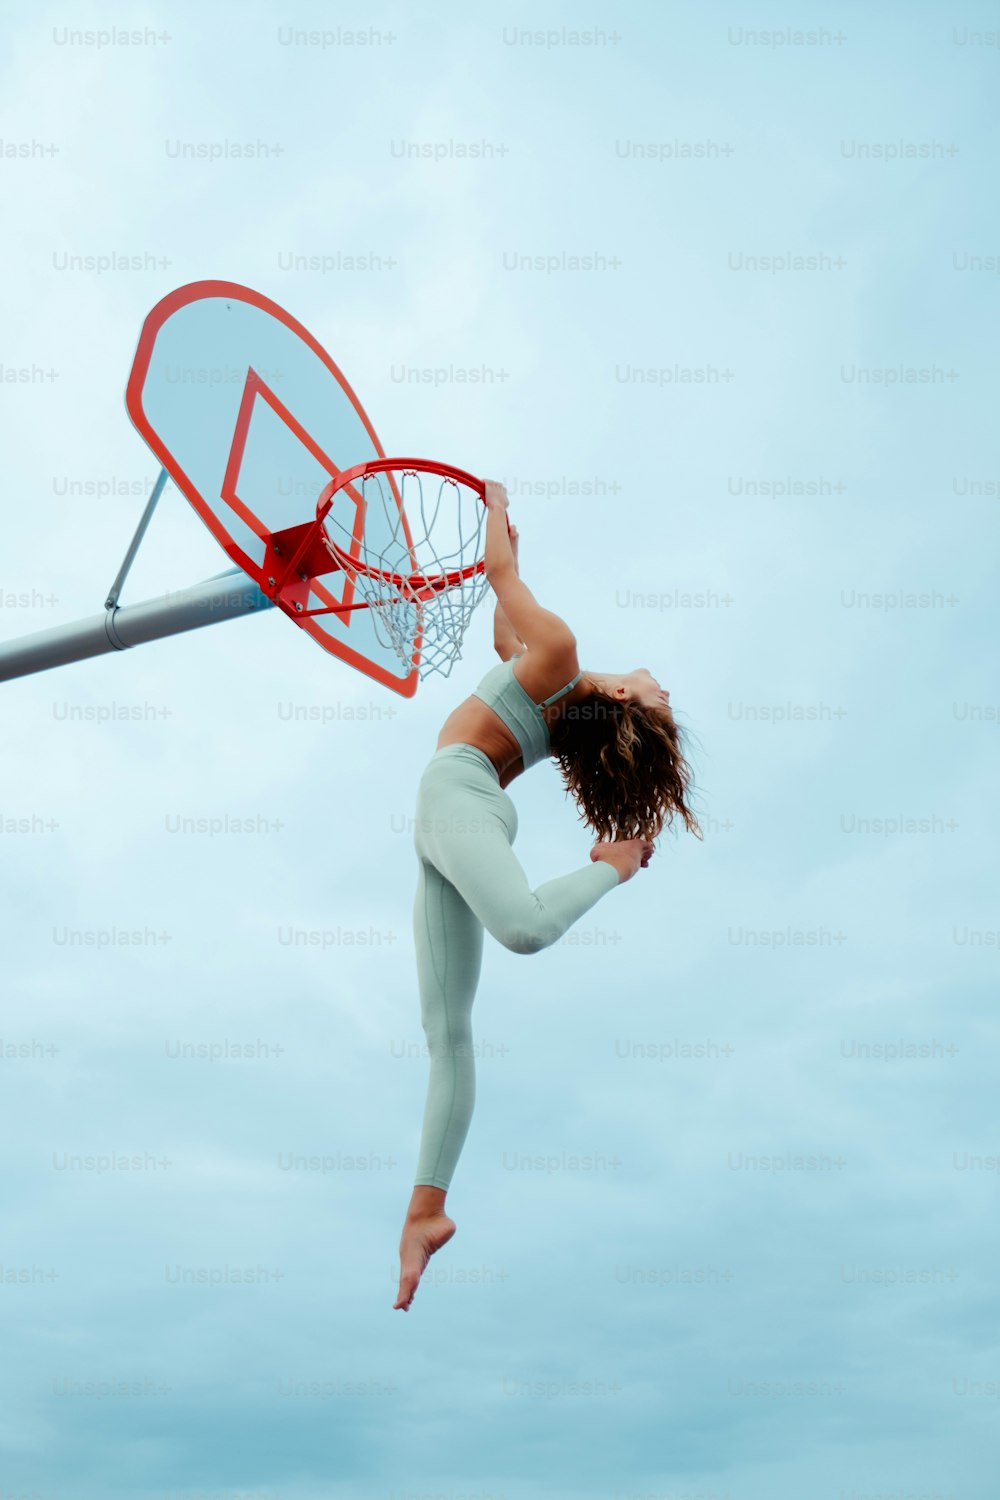 Eine Frau springt in die Luft, um einen Basketball zu tauchen